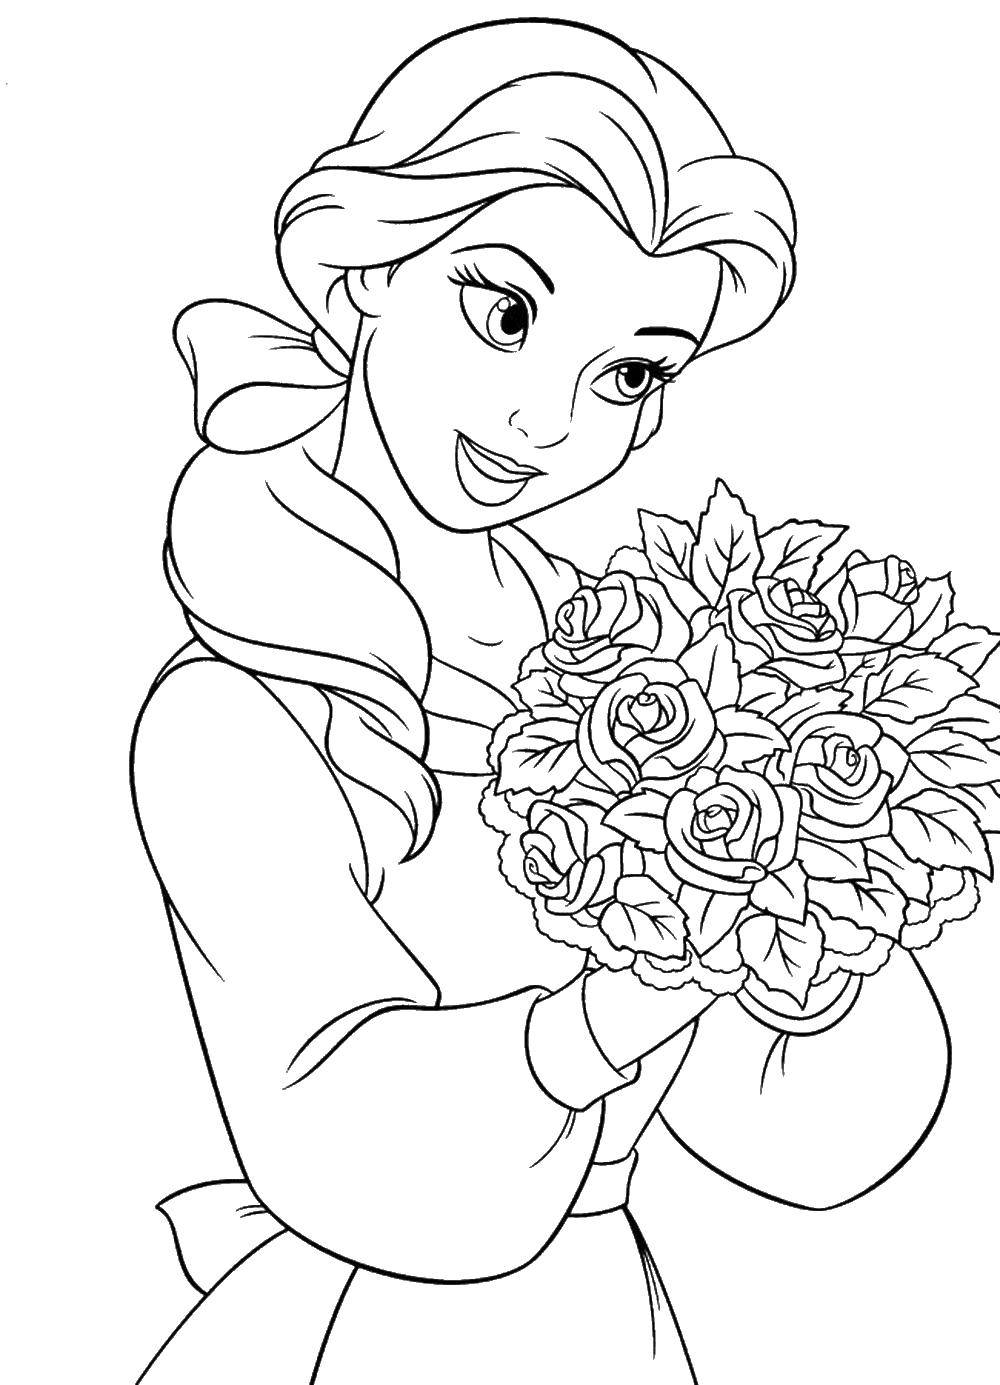 Название: Раскраска Бель с букетом роз. Категория: Принцессы. Теги: принцесса, Бель, цветы, Дисней.